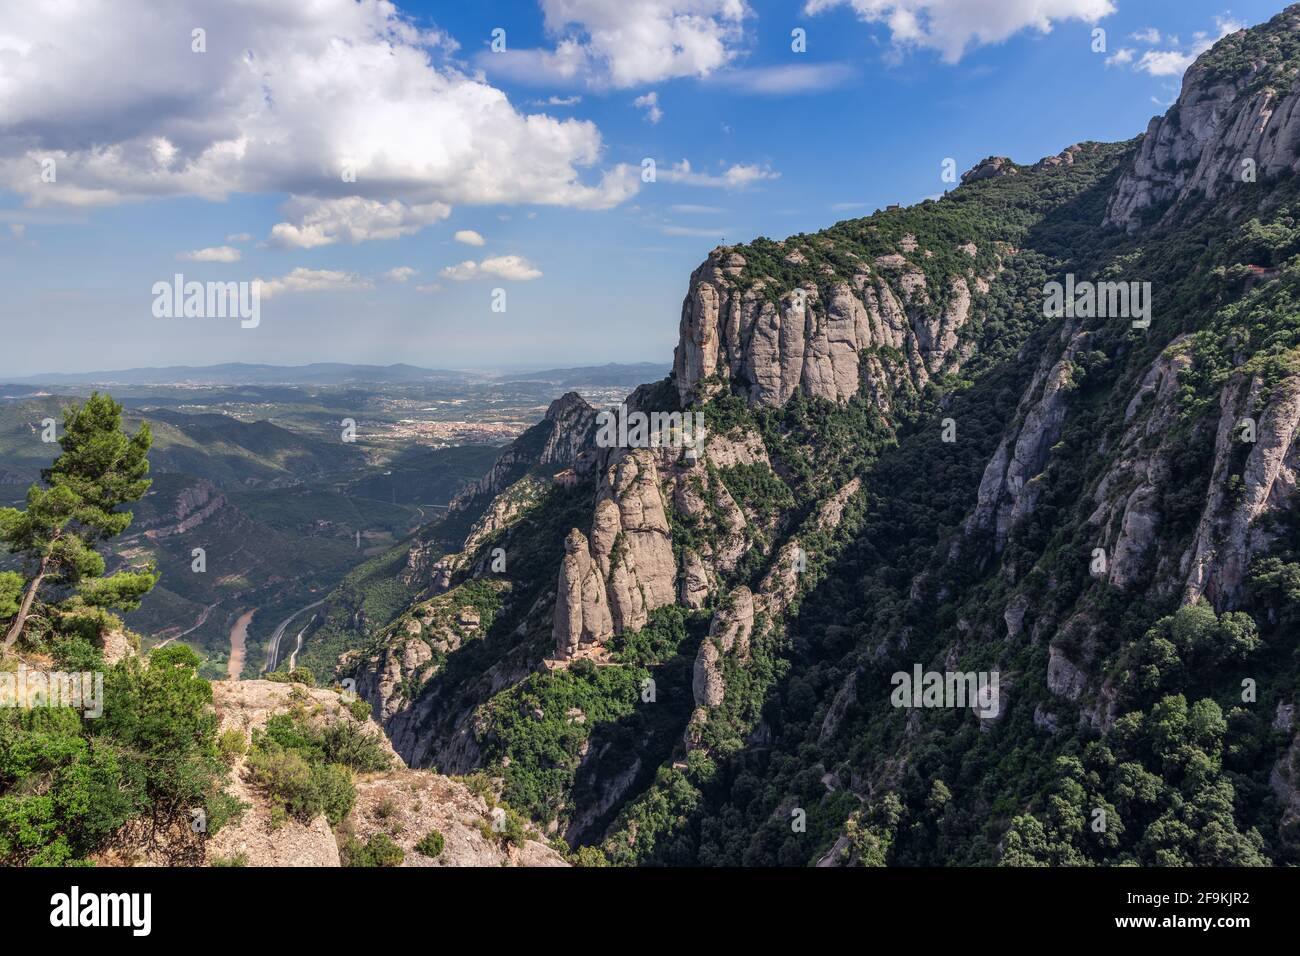 Vue sur les montagnes et les plaines entourant l'abbaye de Montserrat (Santa Maria de Montserrat) en Catalogne, Espagne (photo verticale) Banque D'Images